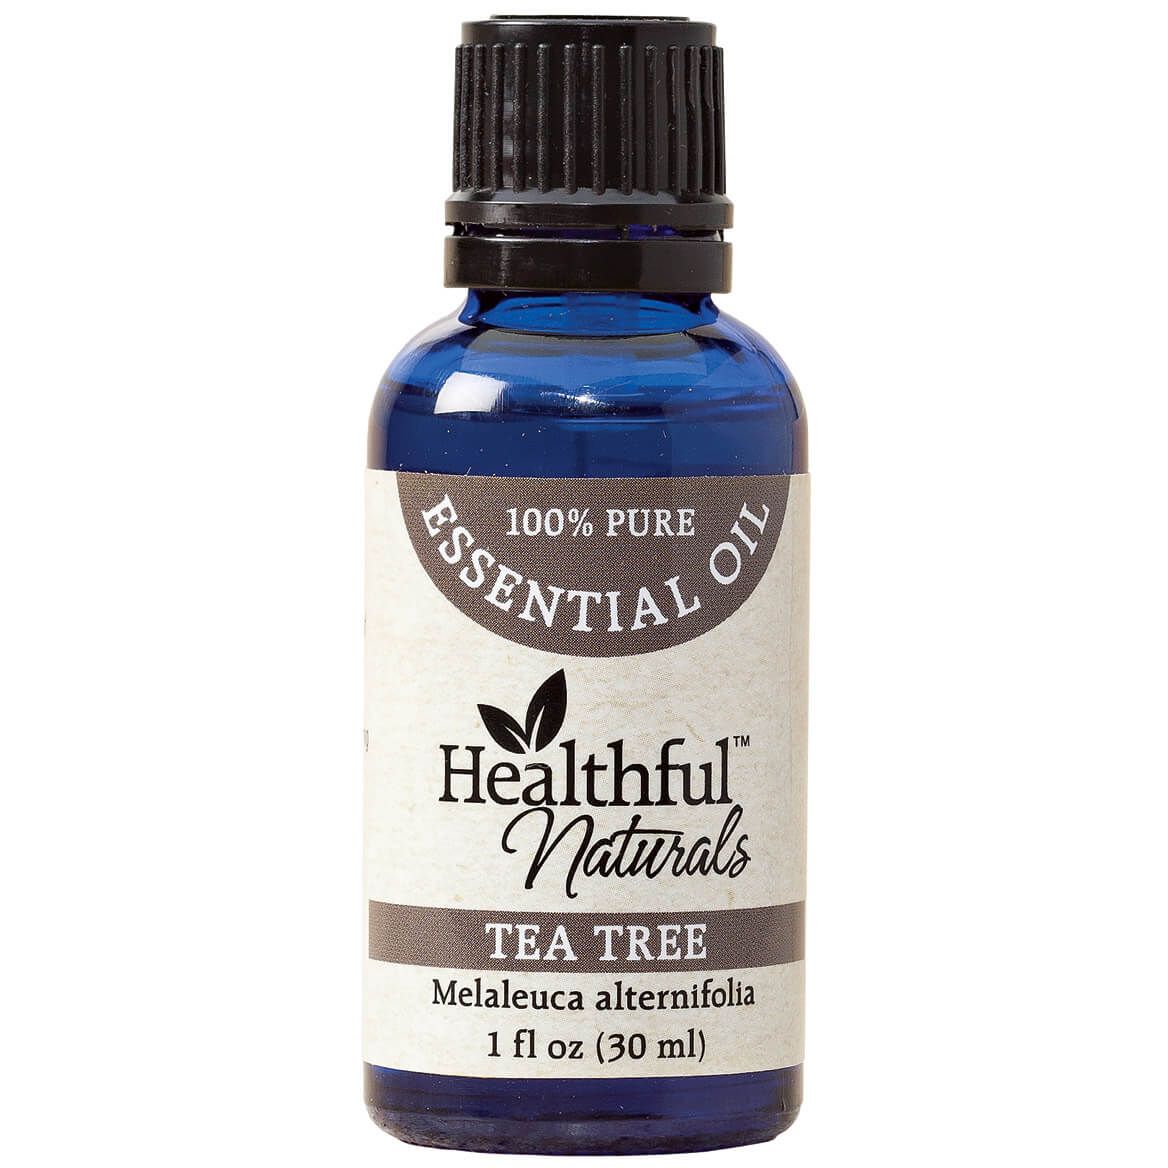 Healthful™ Naturals Tea Tree Essential Oil - 30 ml + '-' + 353457